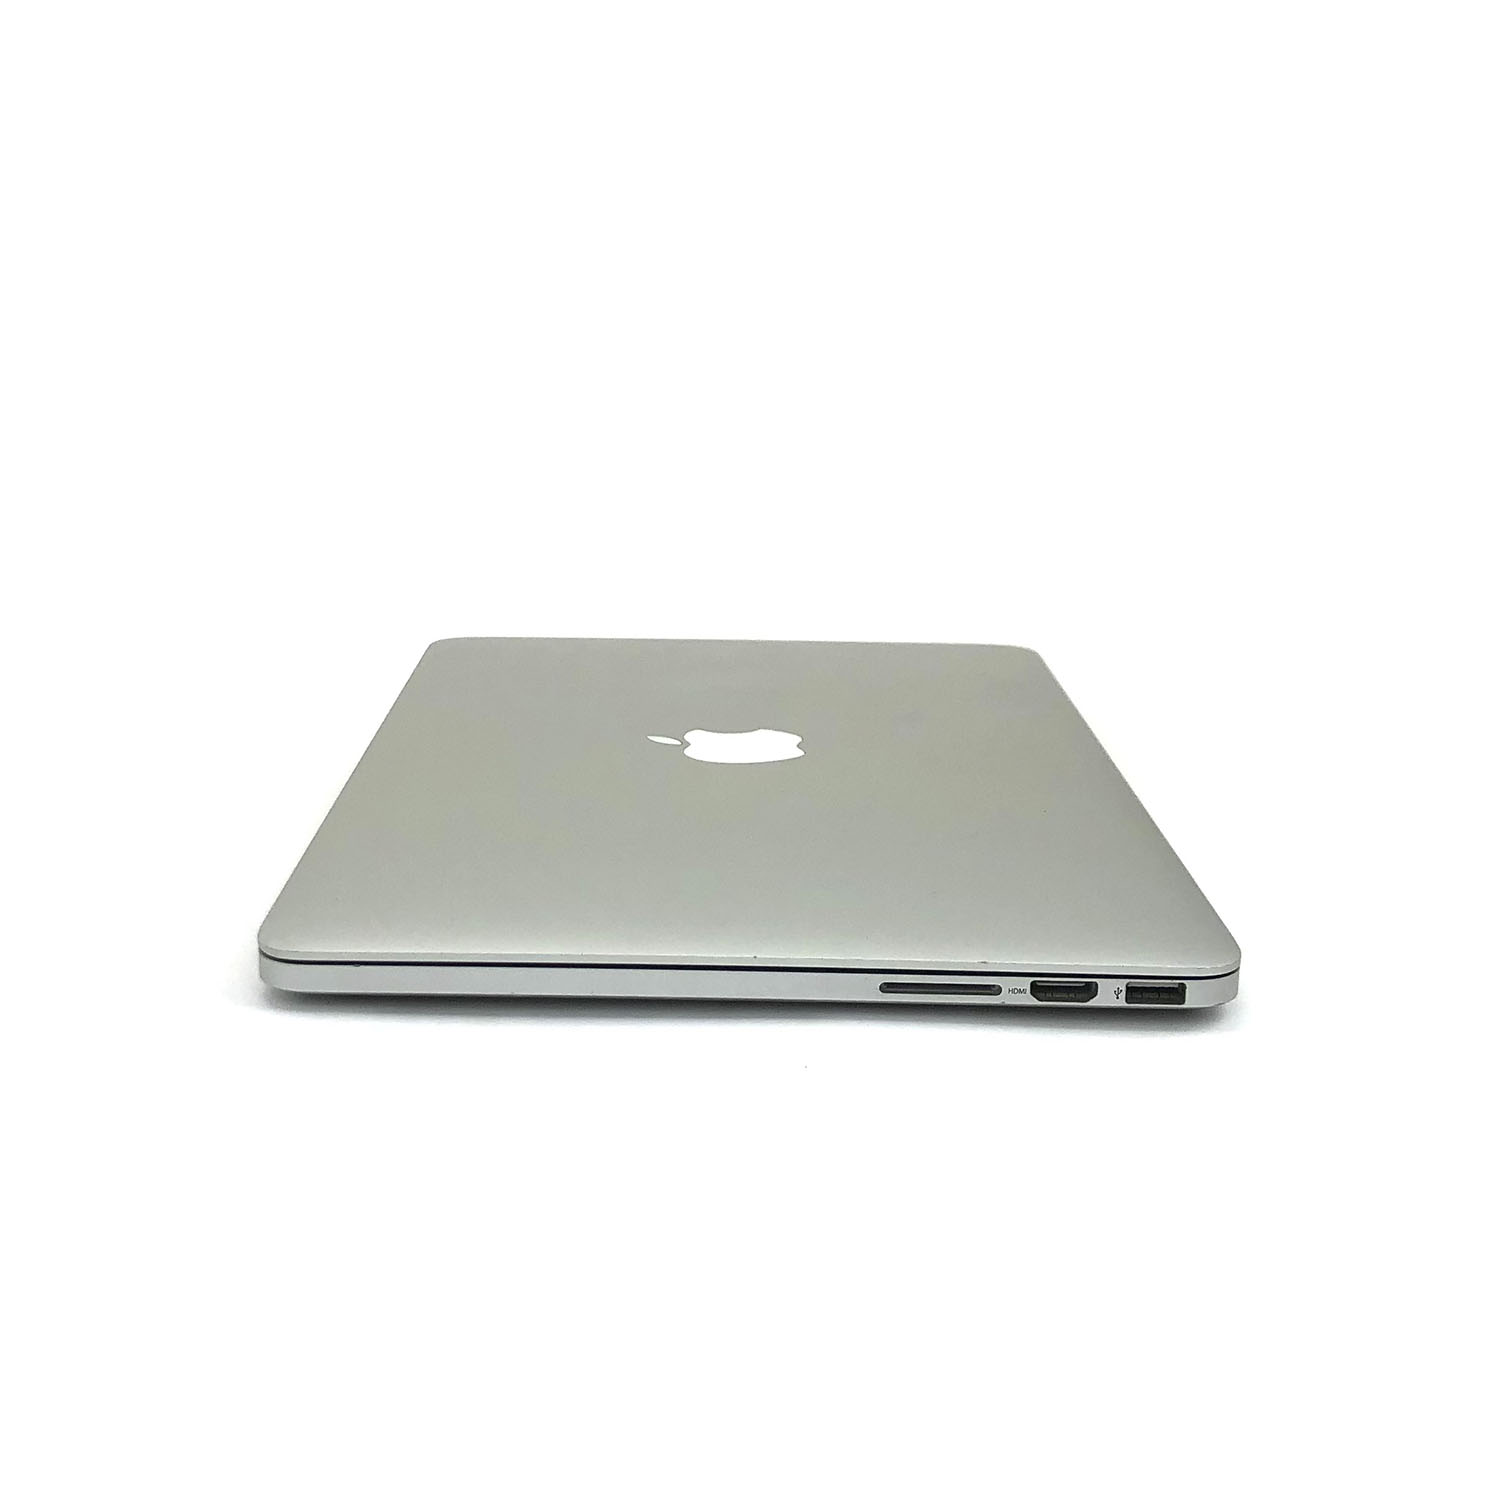 Macbook Pro Retina 13 i5 2.6Ghz 8GB 256GB SSD MGX72LL/A Seminovo